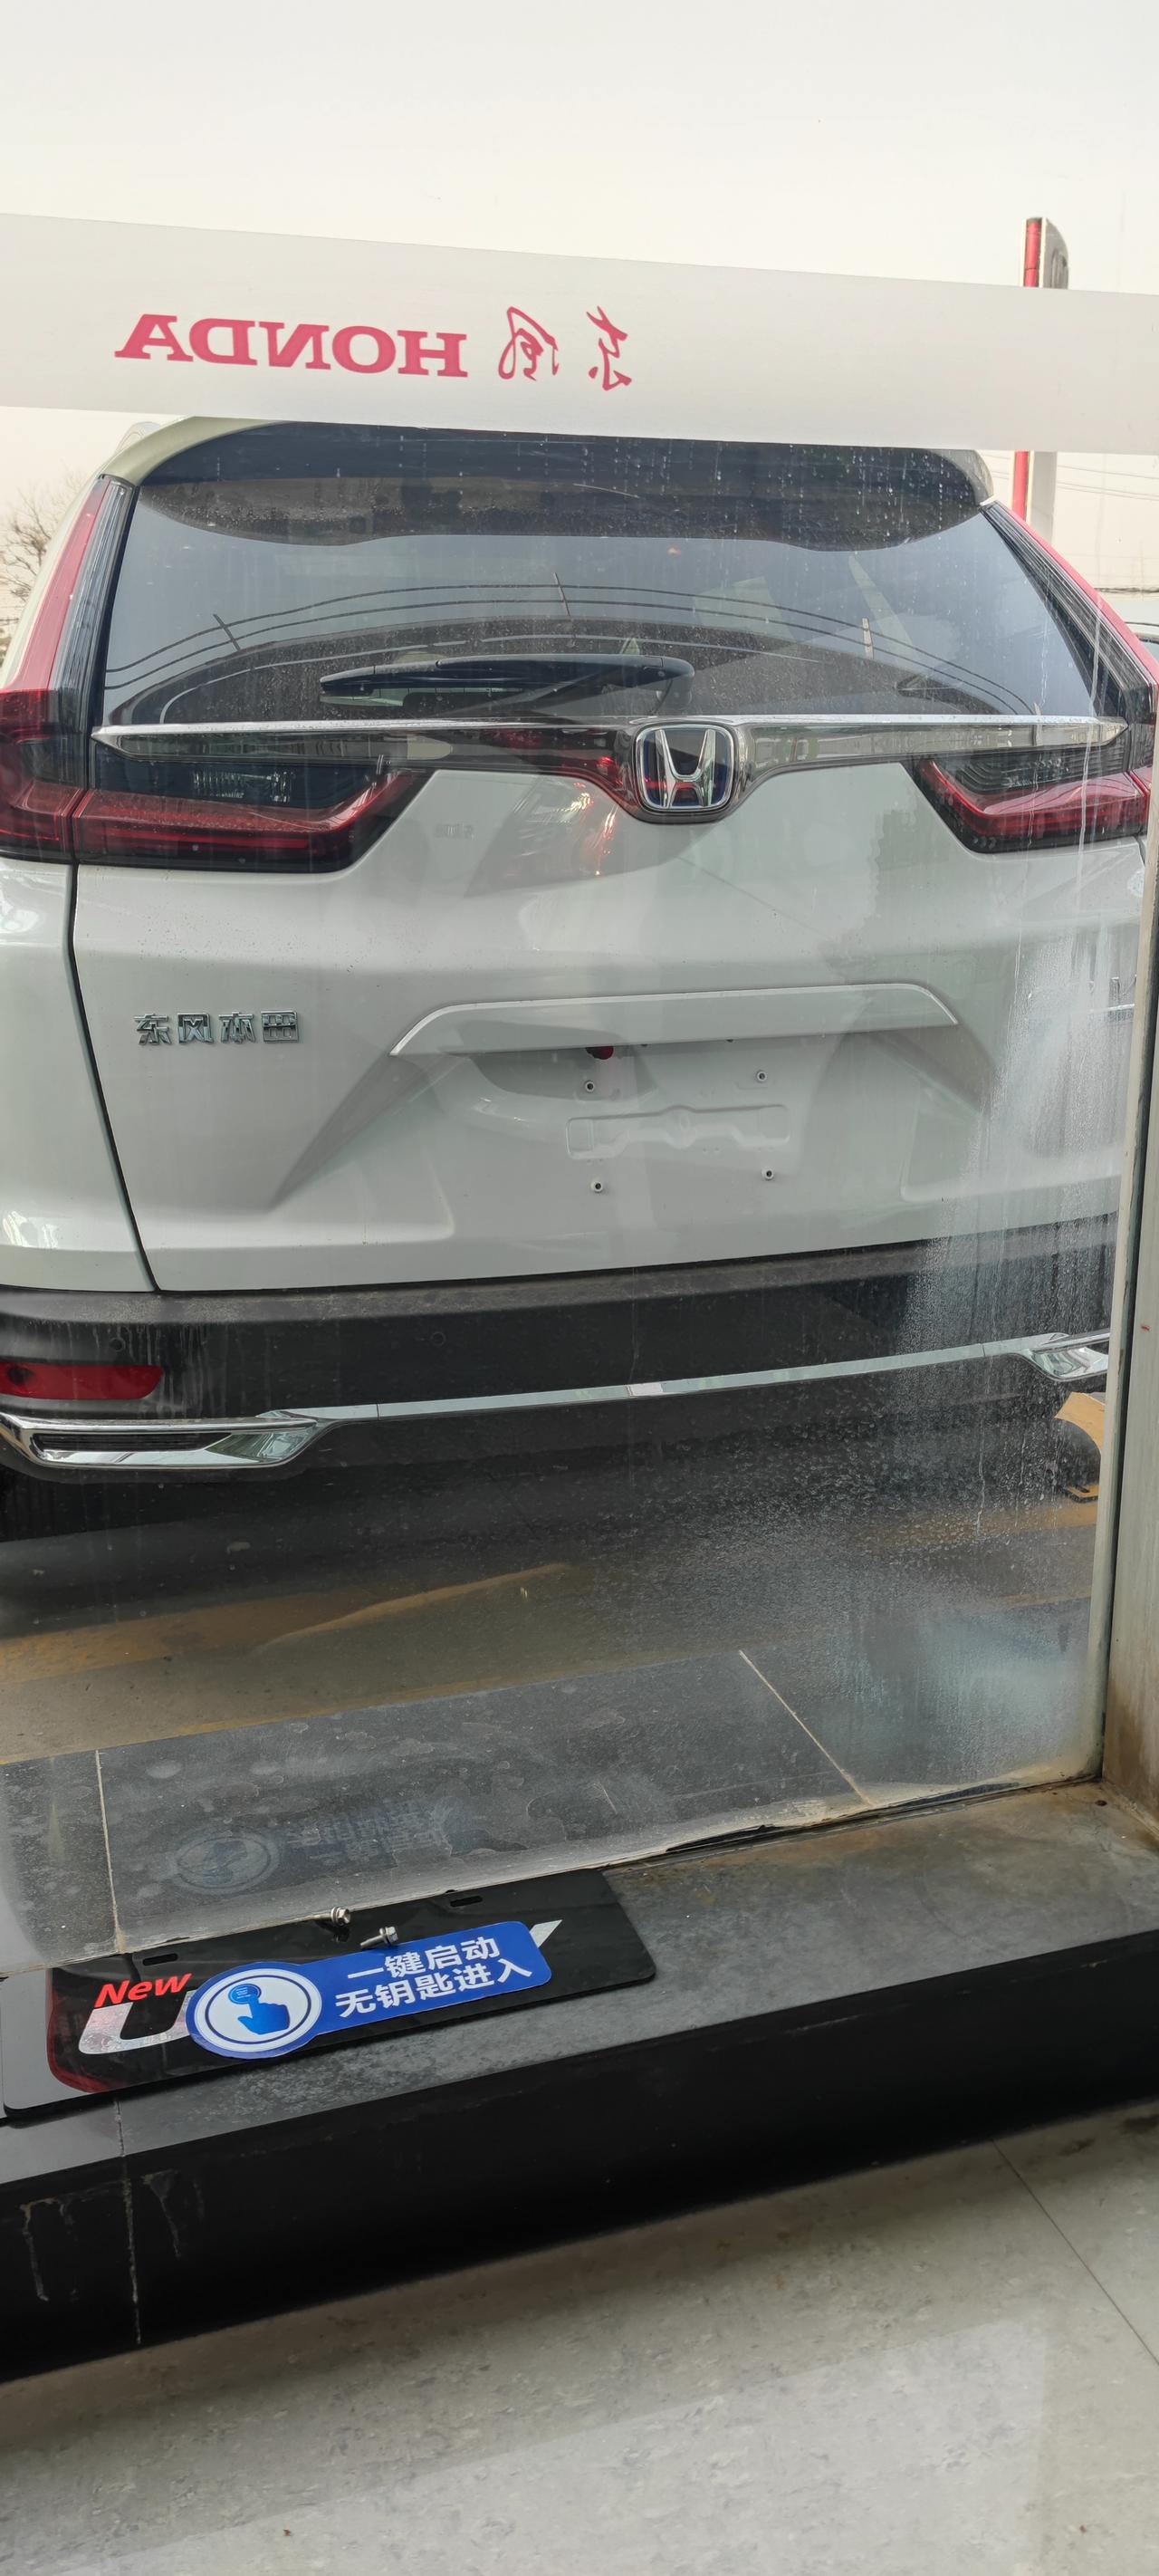 本田CR-V 最近想提混动低配净行版，最近有没提了这个车的，分享下价格参考下，送了点啥